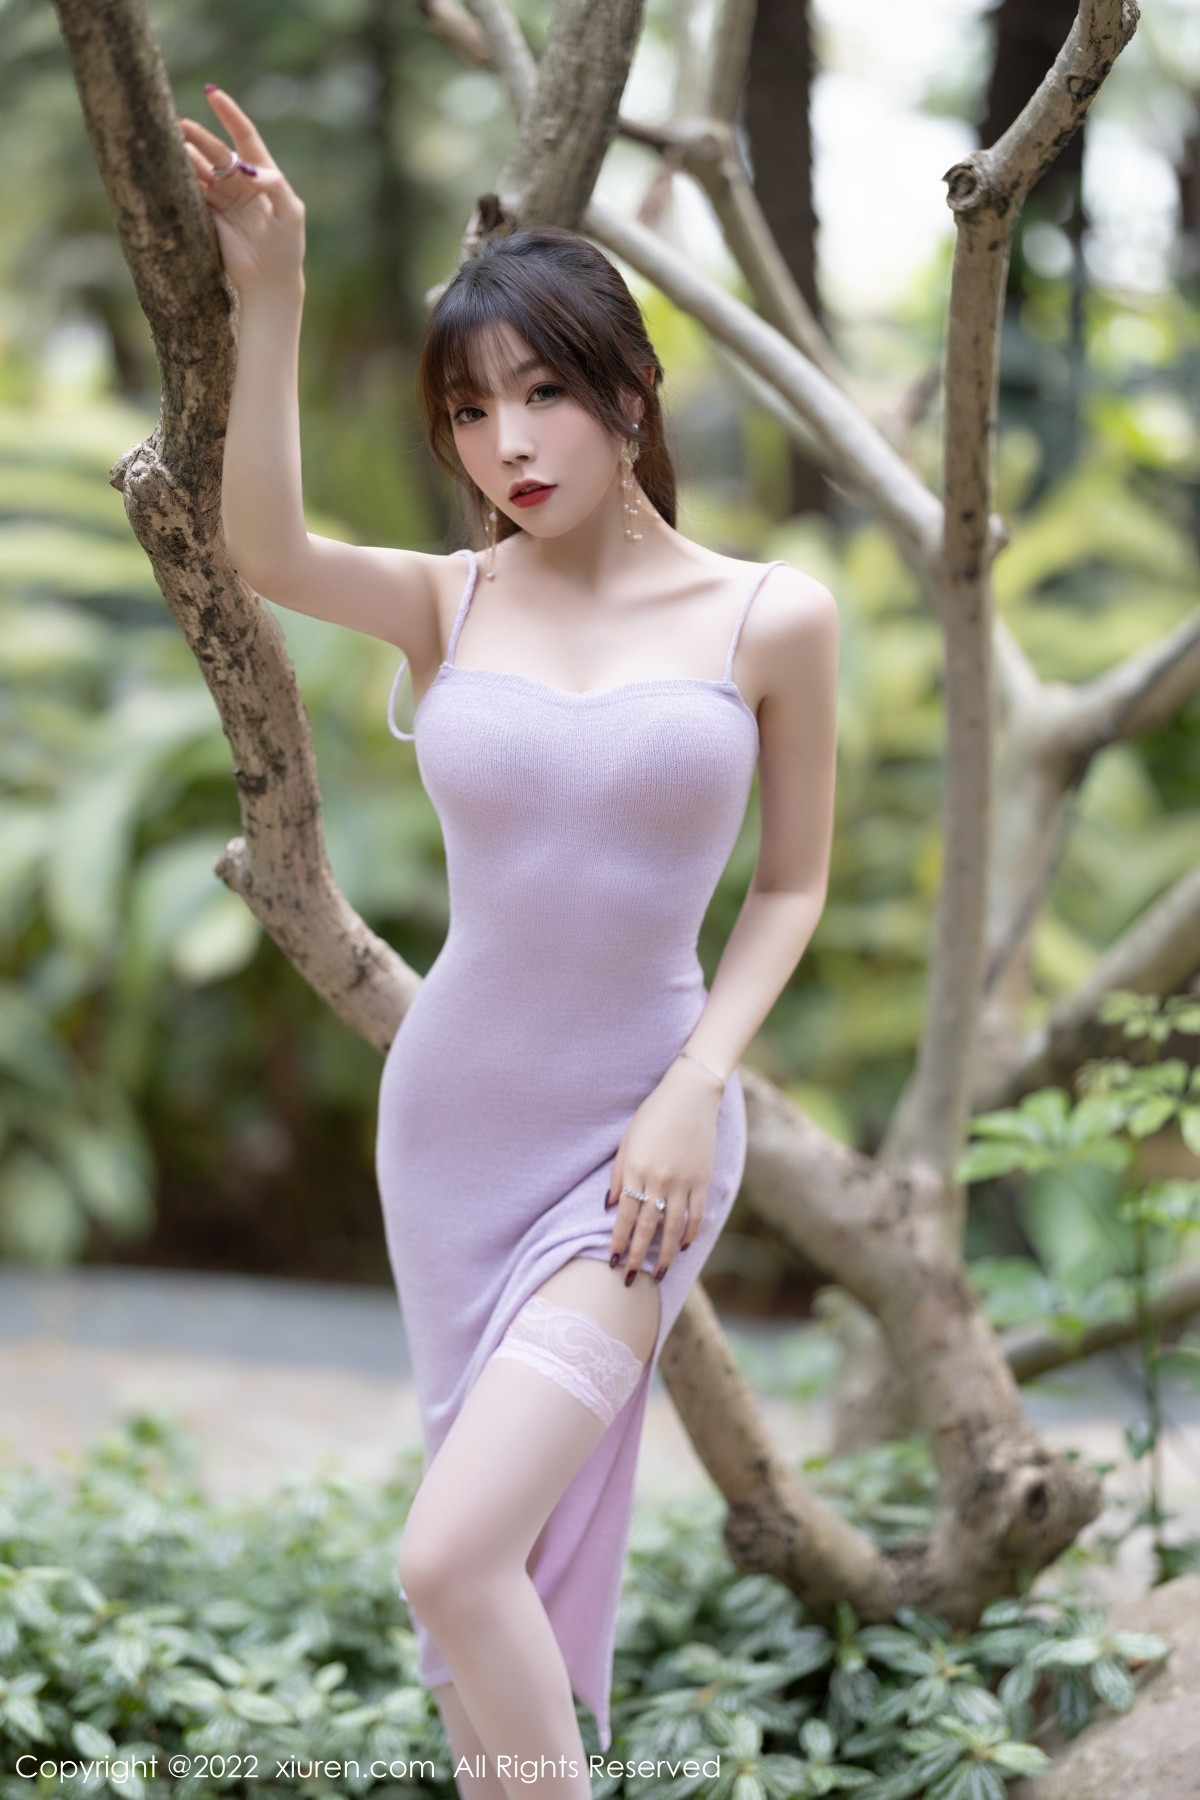 女神芝芝Booty紫色吊带长裙配白色蕾丝袜秀完美身材诱惑写真